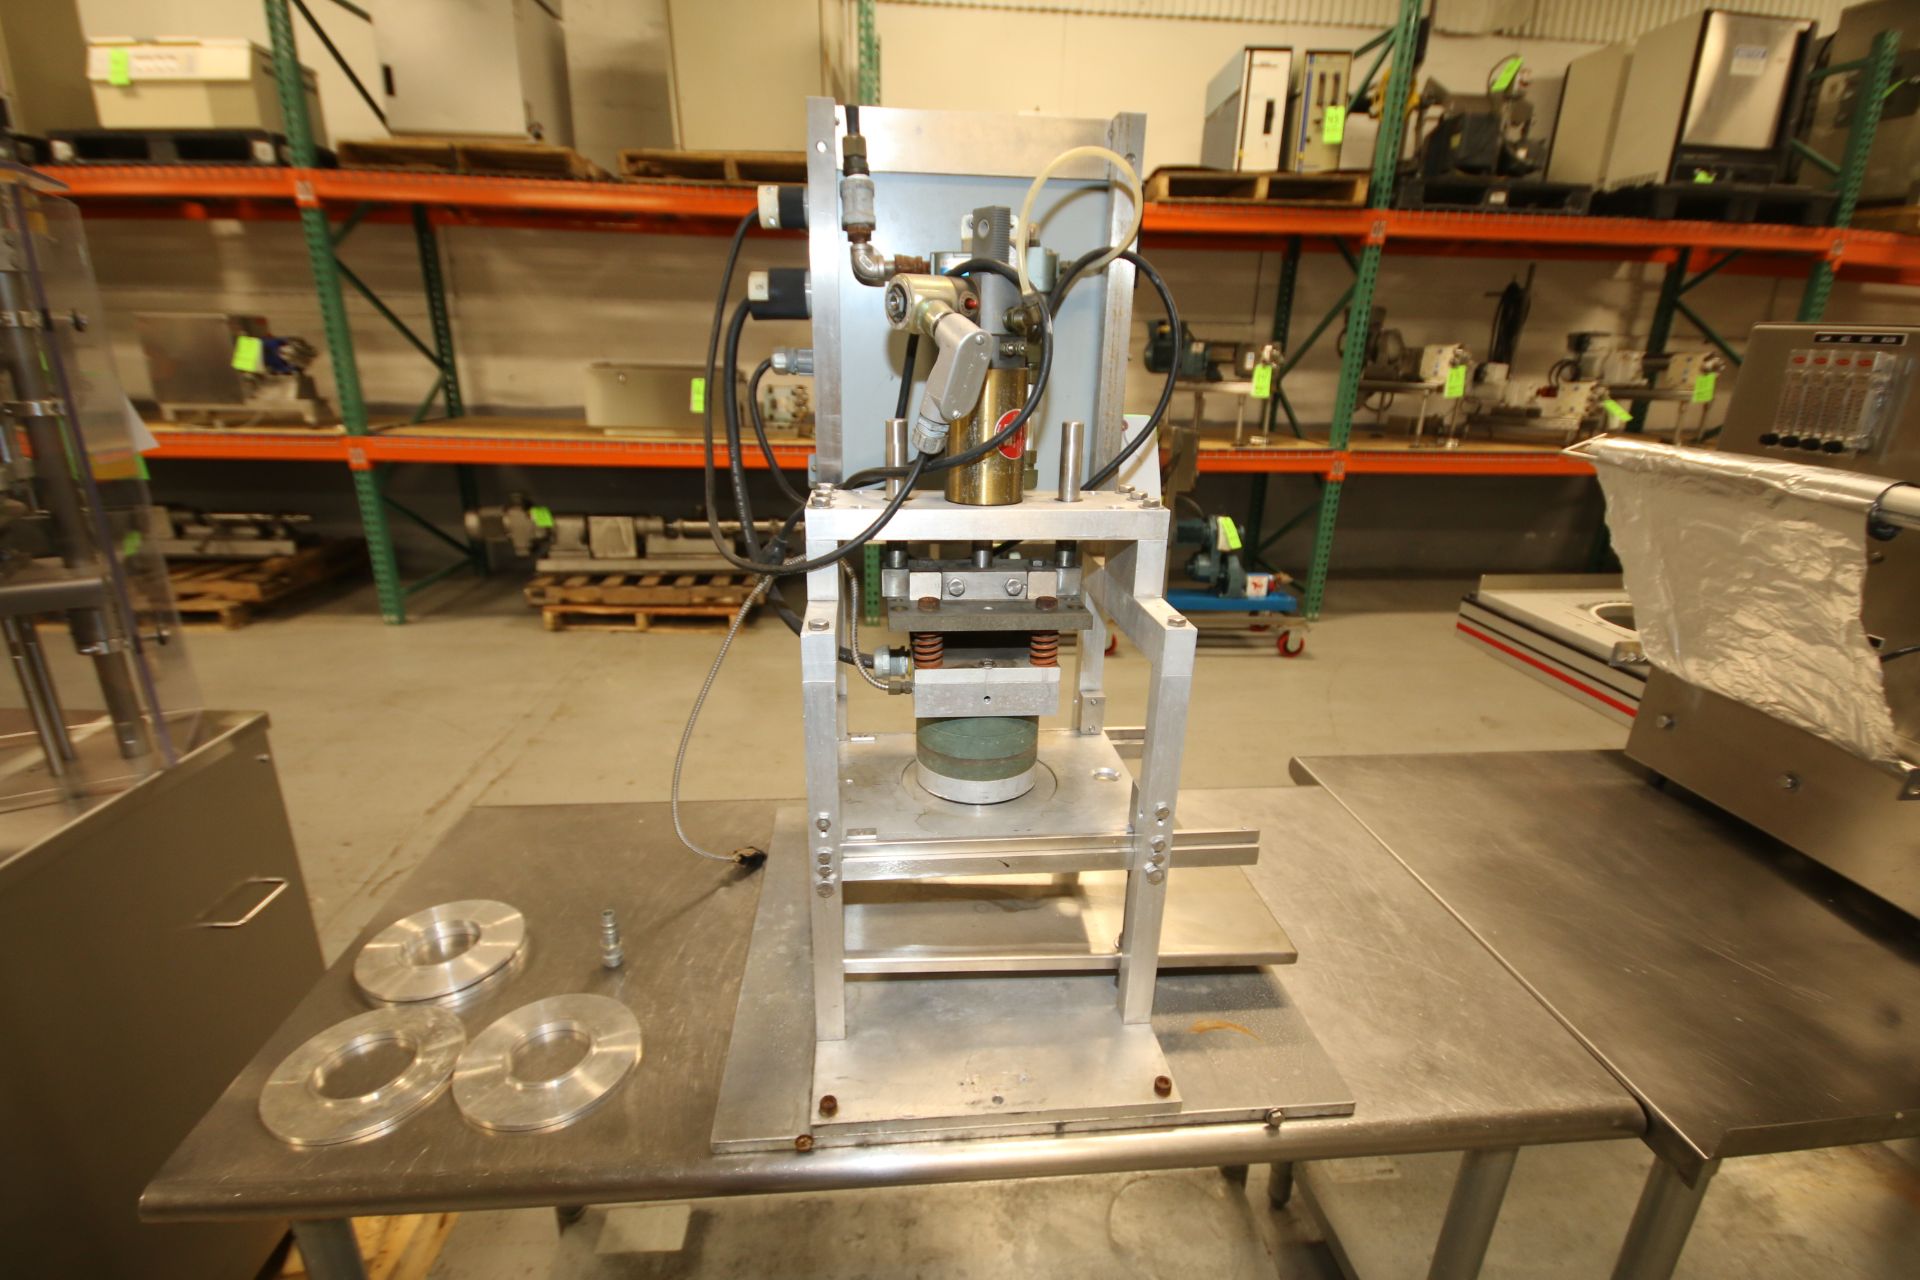 Autoprod Single Head Tamper Evident Sealer, Model Lab.Heat Sealer, S/N AP-1163, Set-Up with 2-3/8" - Image 3 of 5